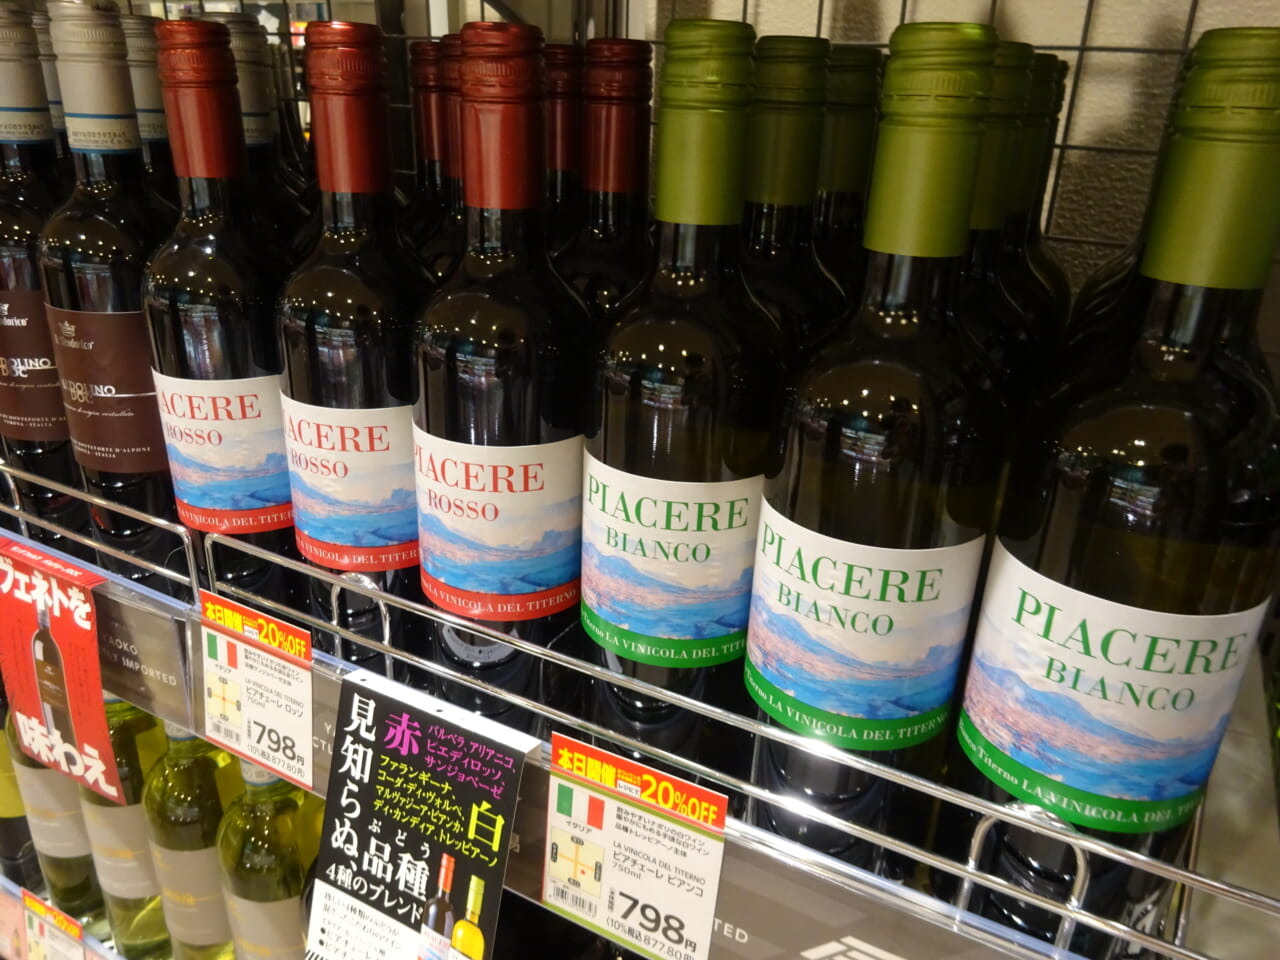 小川貿易が仕入れる直輸入ワインの新商品「ピアチェーレロッソ」「ピアチェーレビアンコ」